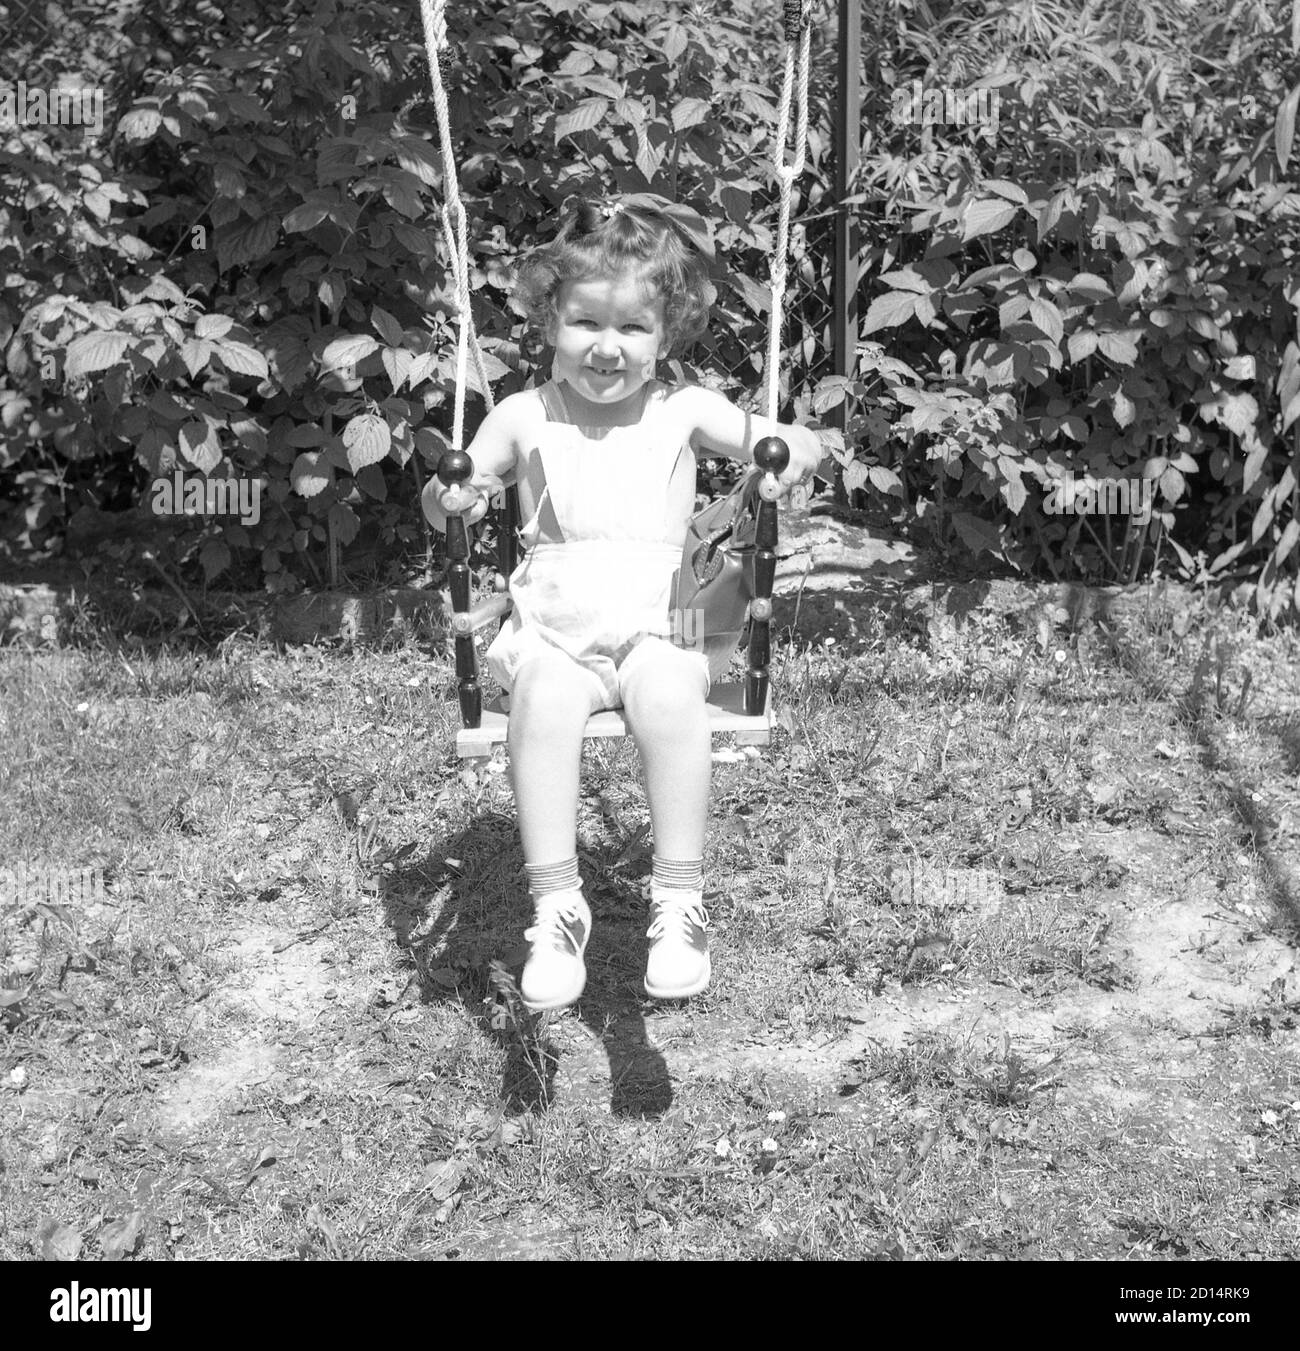 Une jeune fille des années 1950 sur une balançoire, États-Unis Banque D'Images